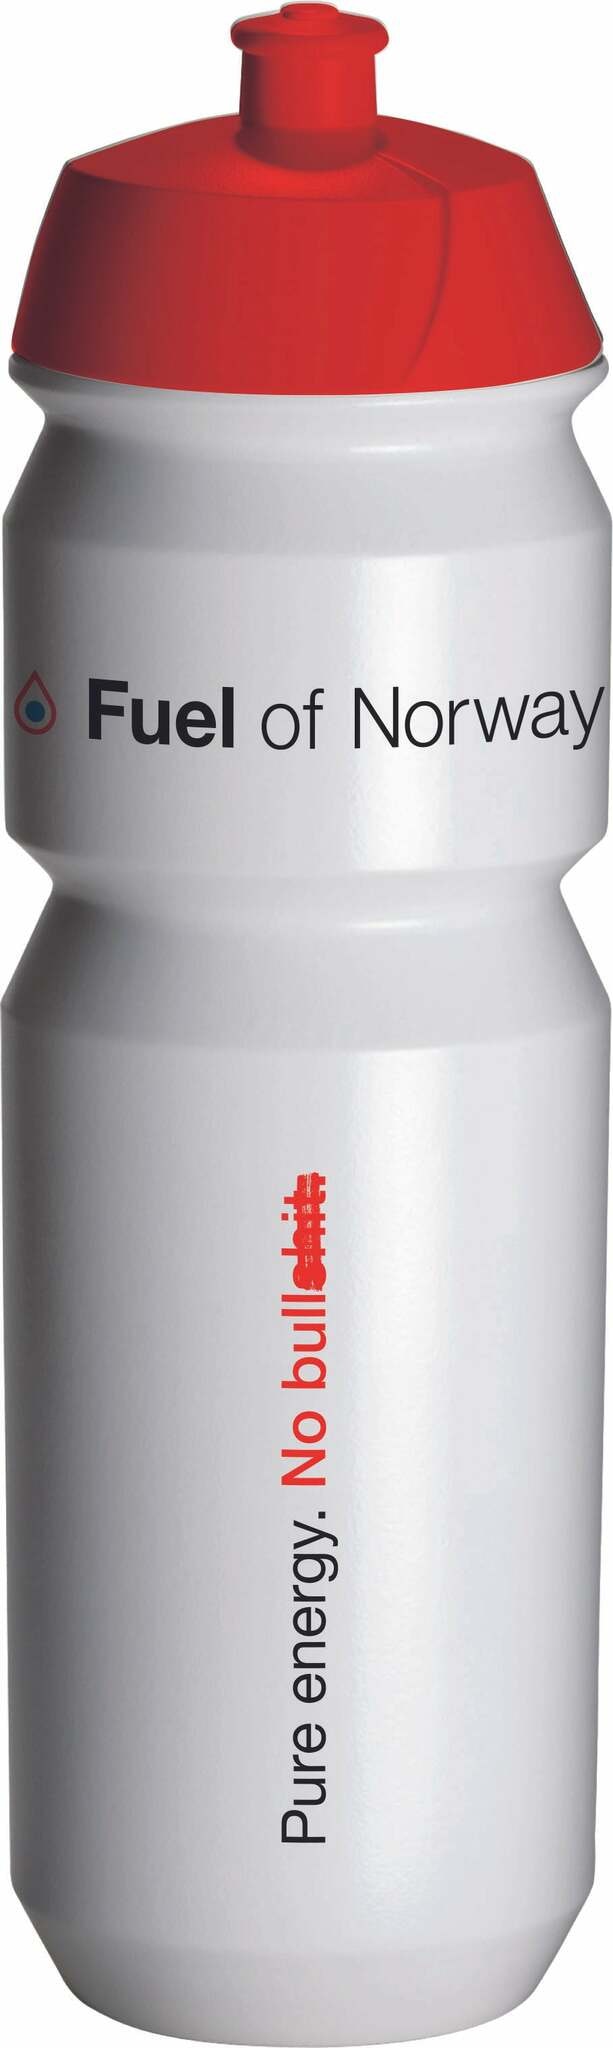 Fuel of Norway - Drikkeflaske 0,7L Rød kork